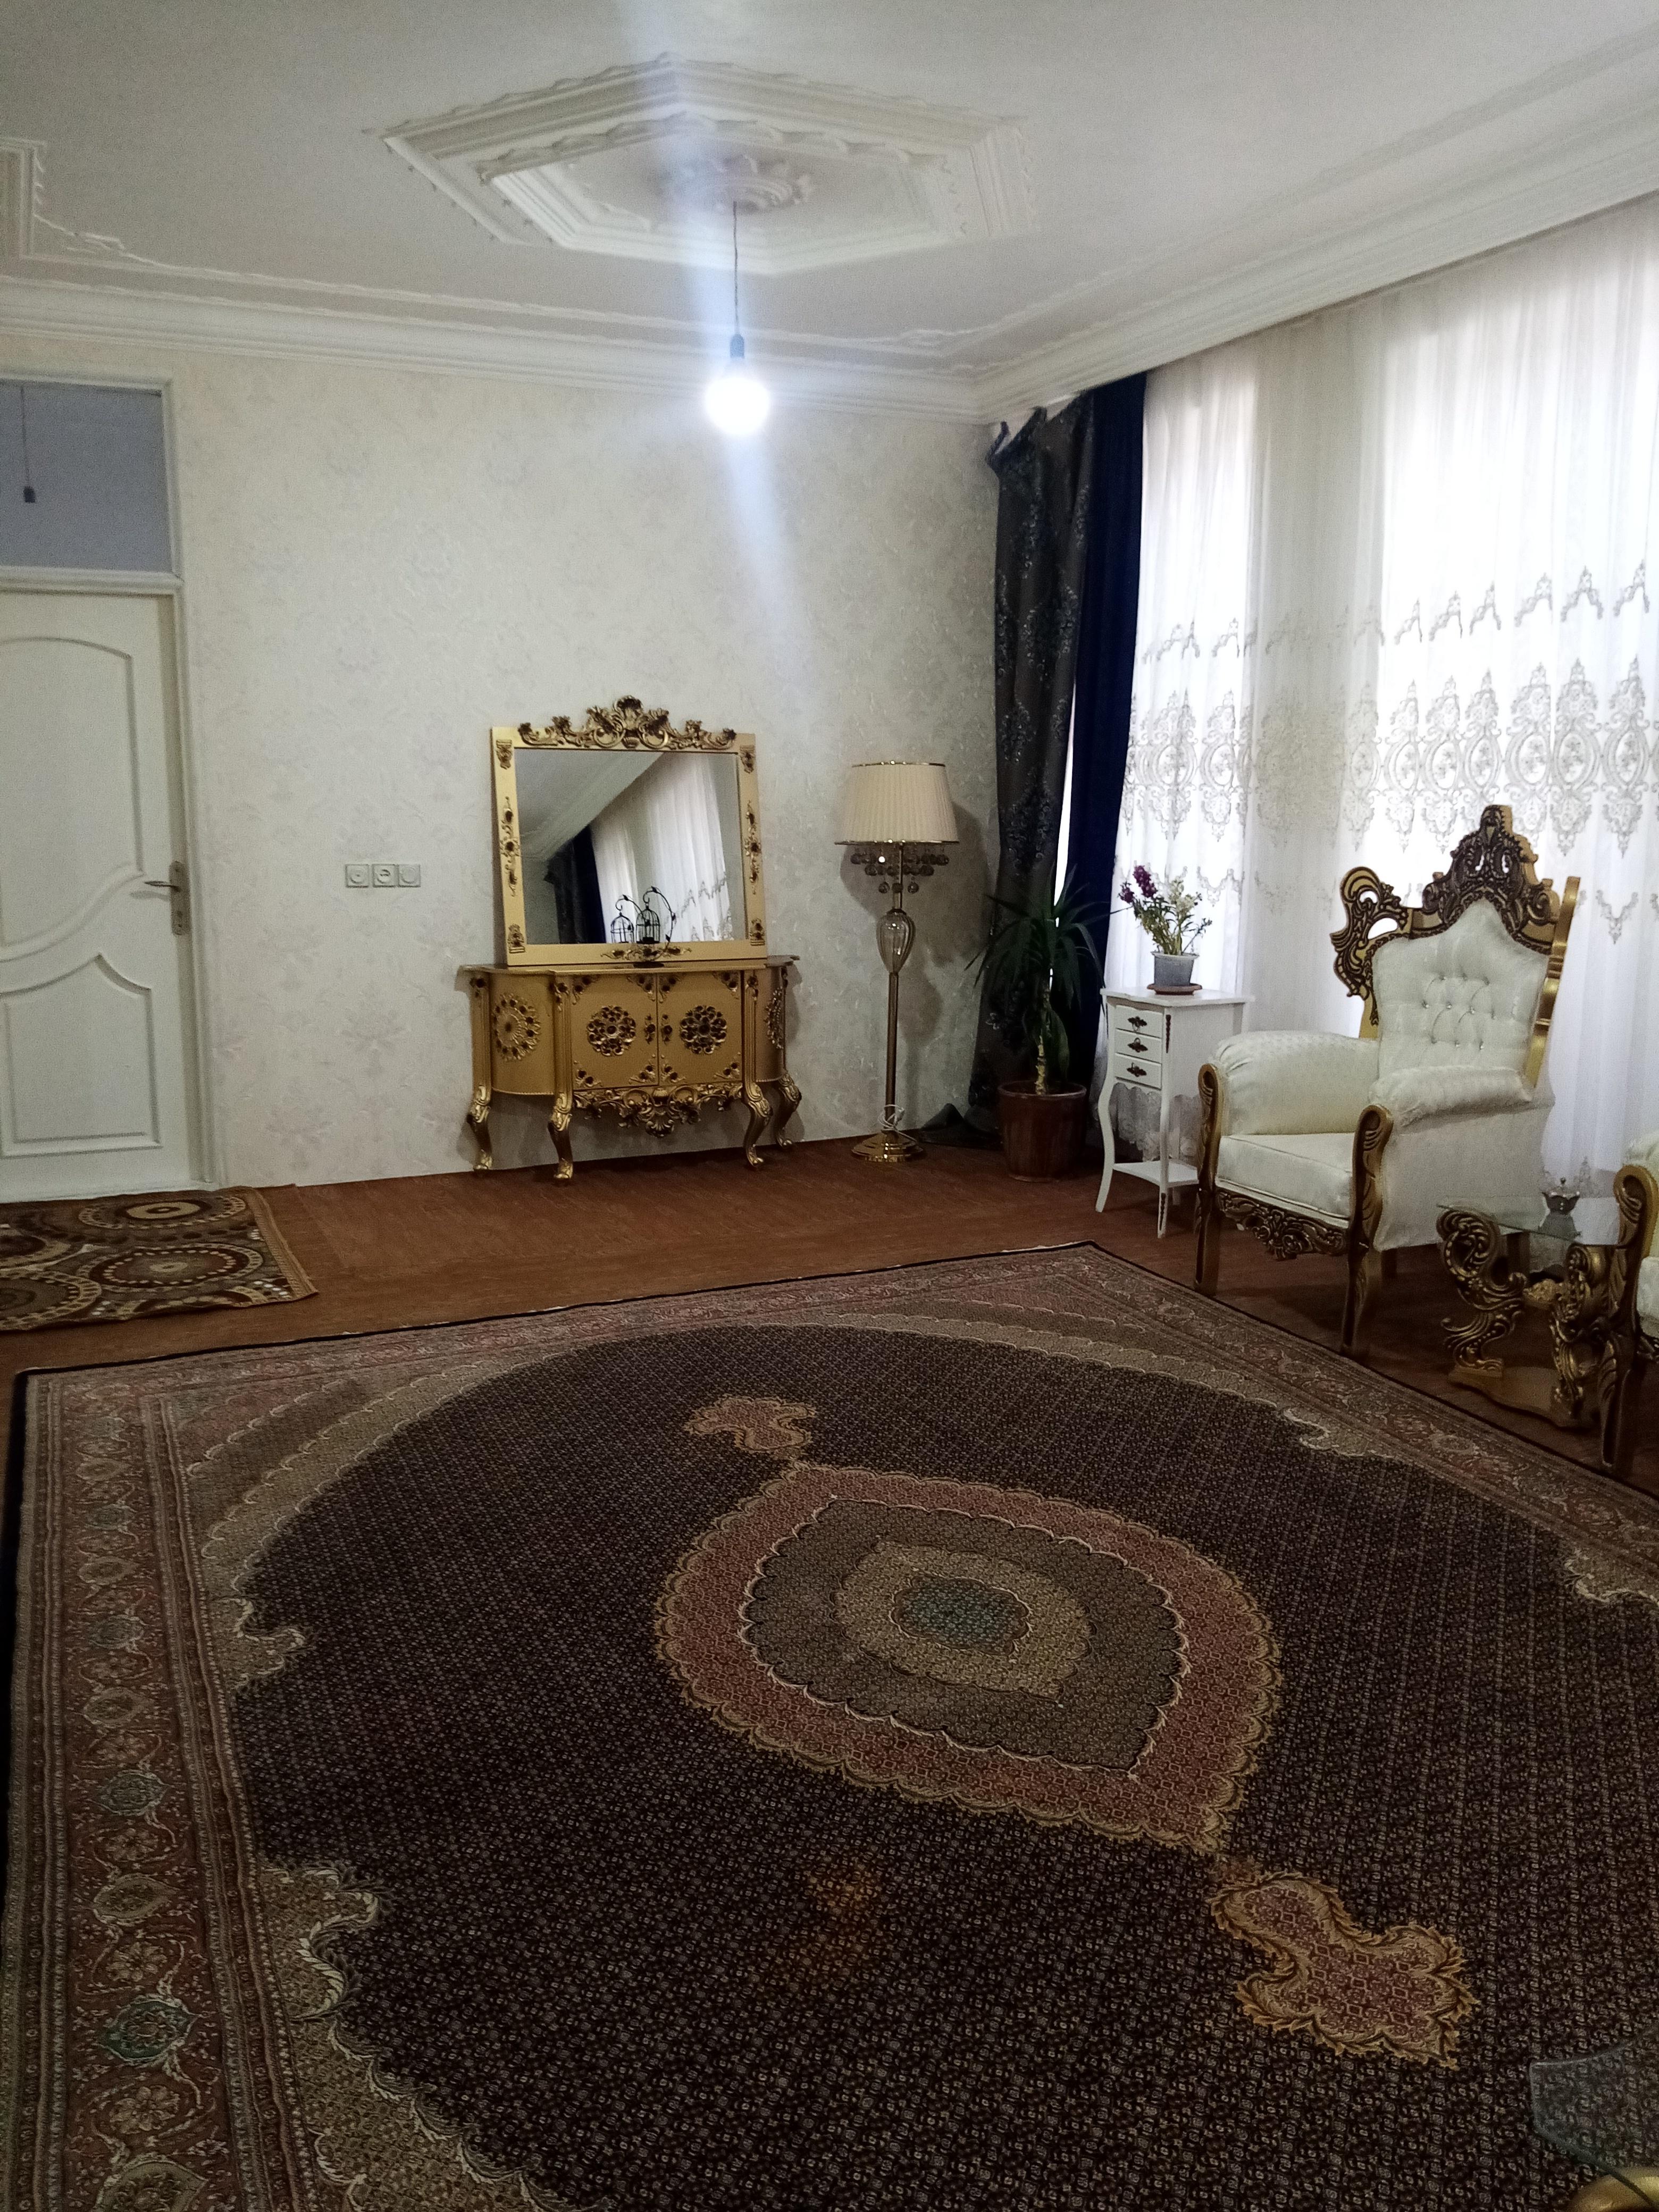 اجاره منزل  ویلایی همکف باپارکینگ در اردبیل